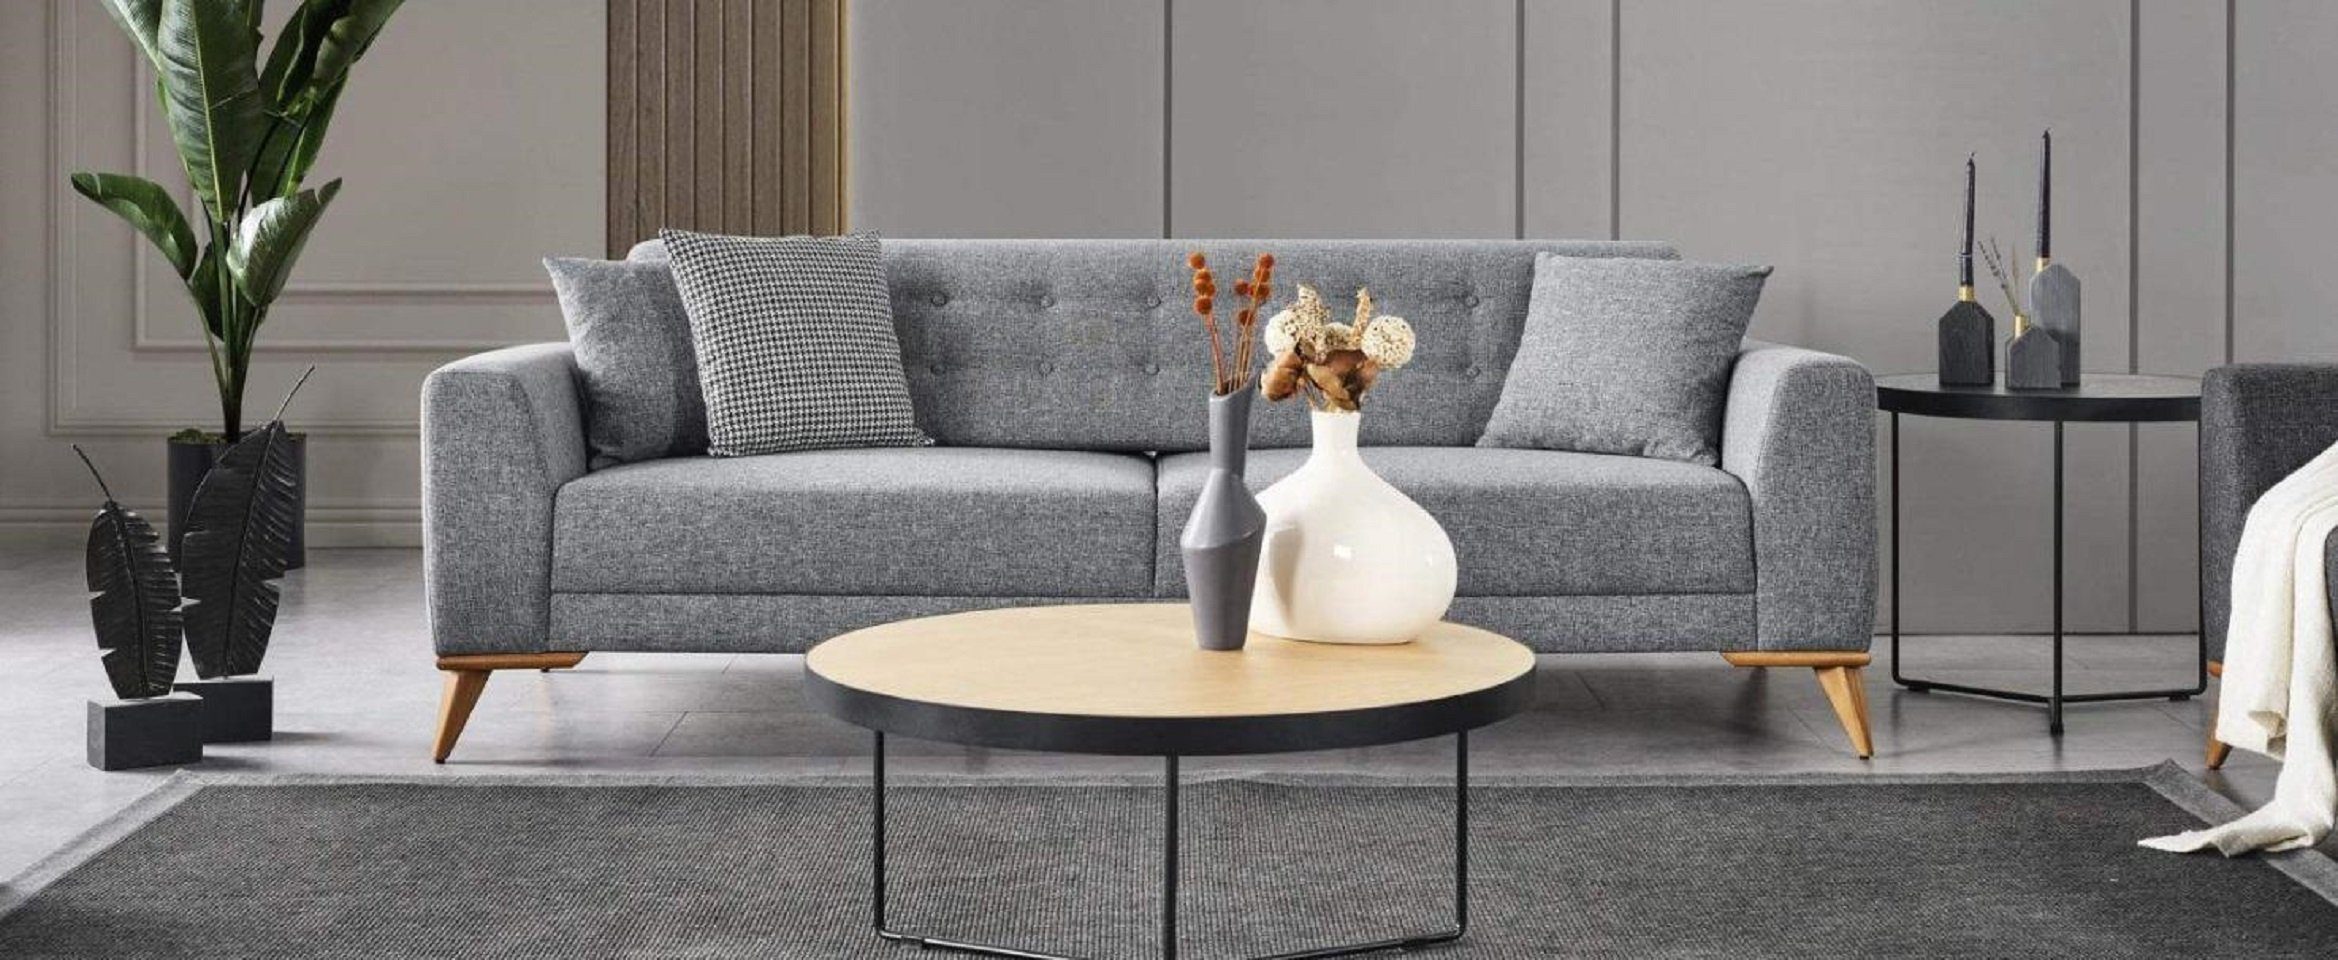 JVmoebel 3-Sitzer Modern Dreisitzer Sofa Grau Couchen luxus Möbel im Wohnzimmer 223cm, 1 Teile, Made in Europe